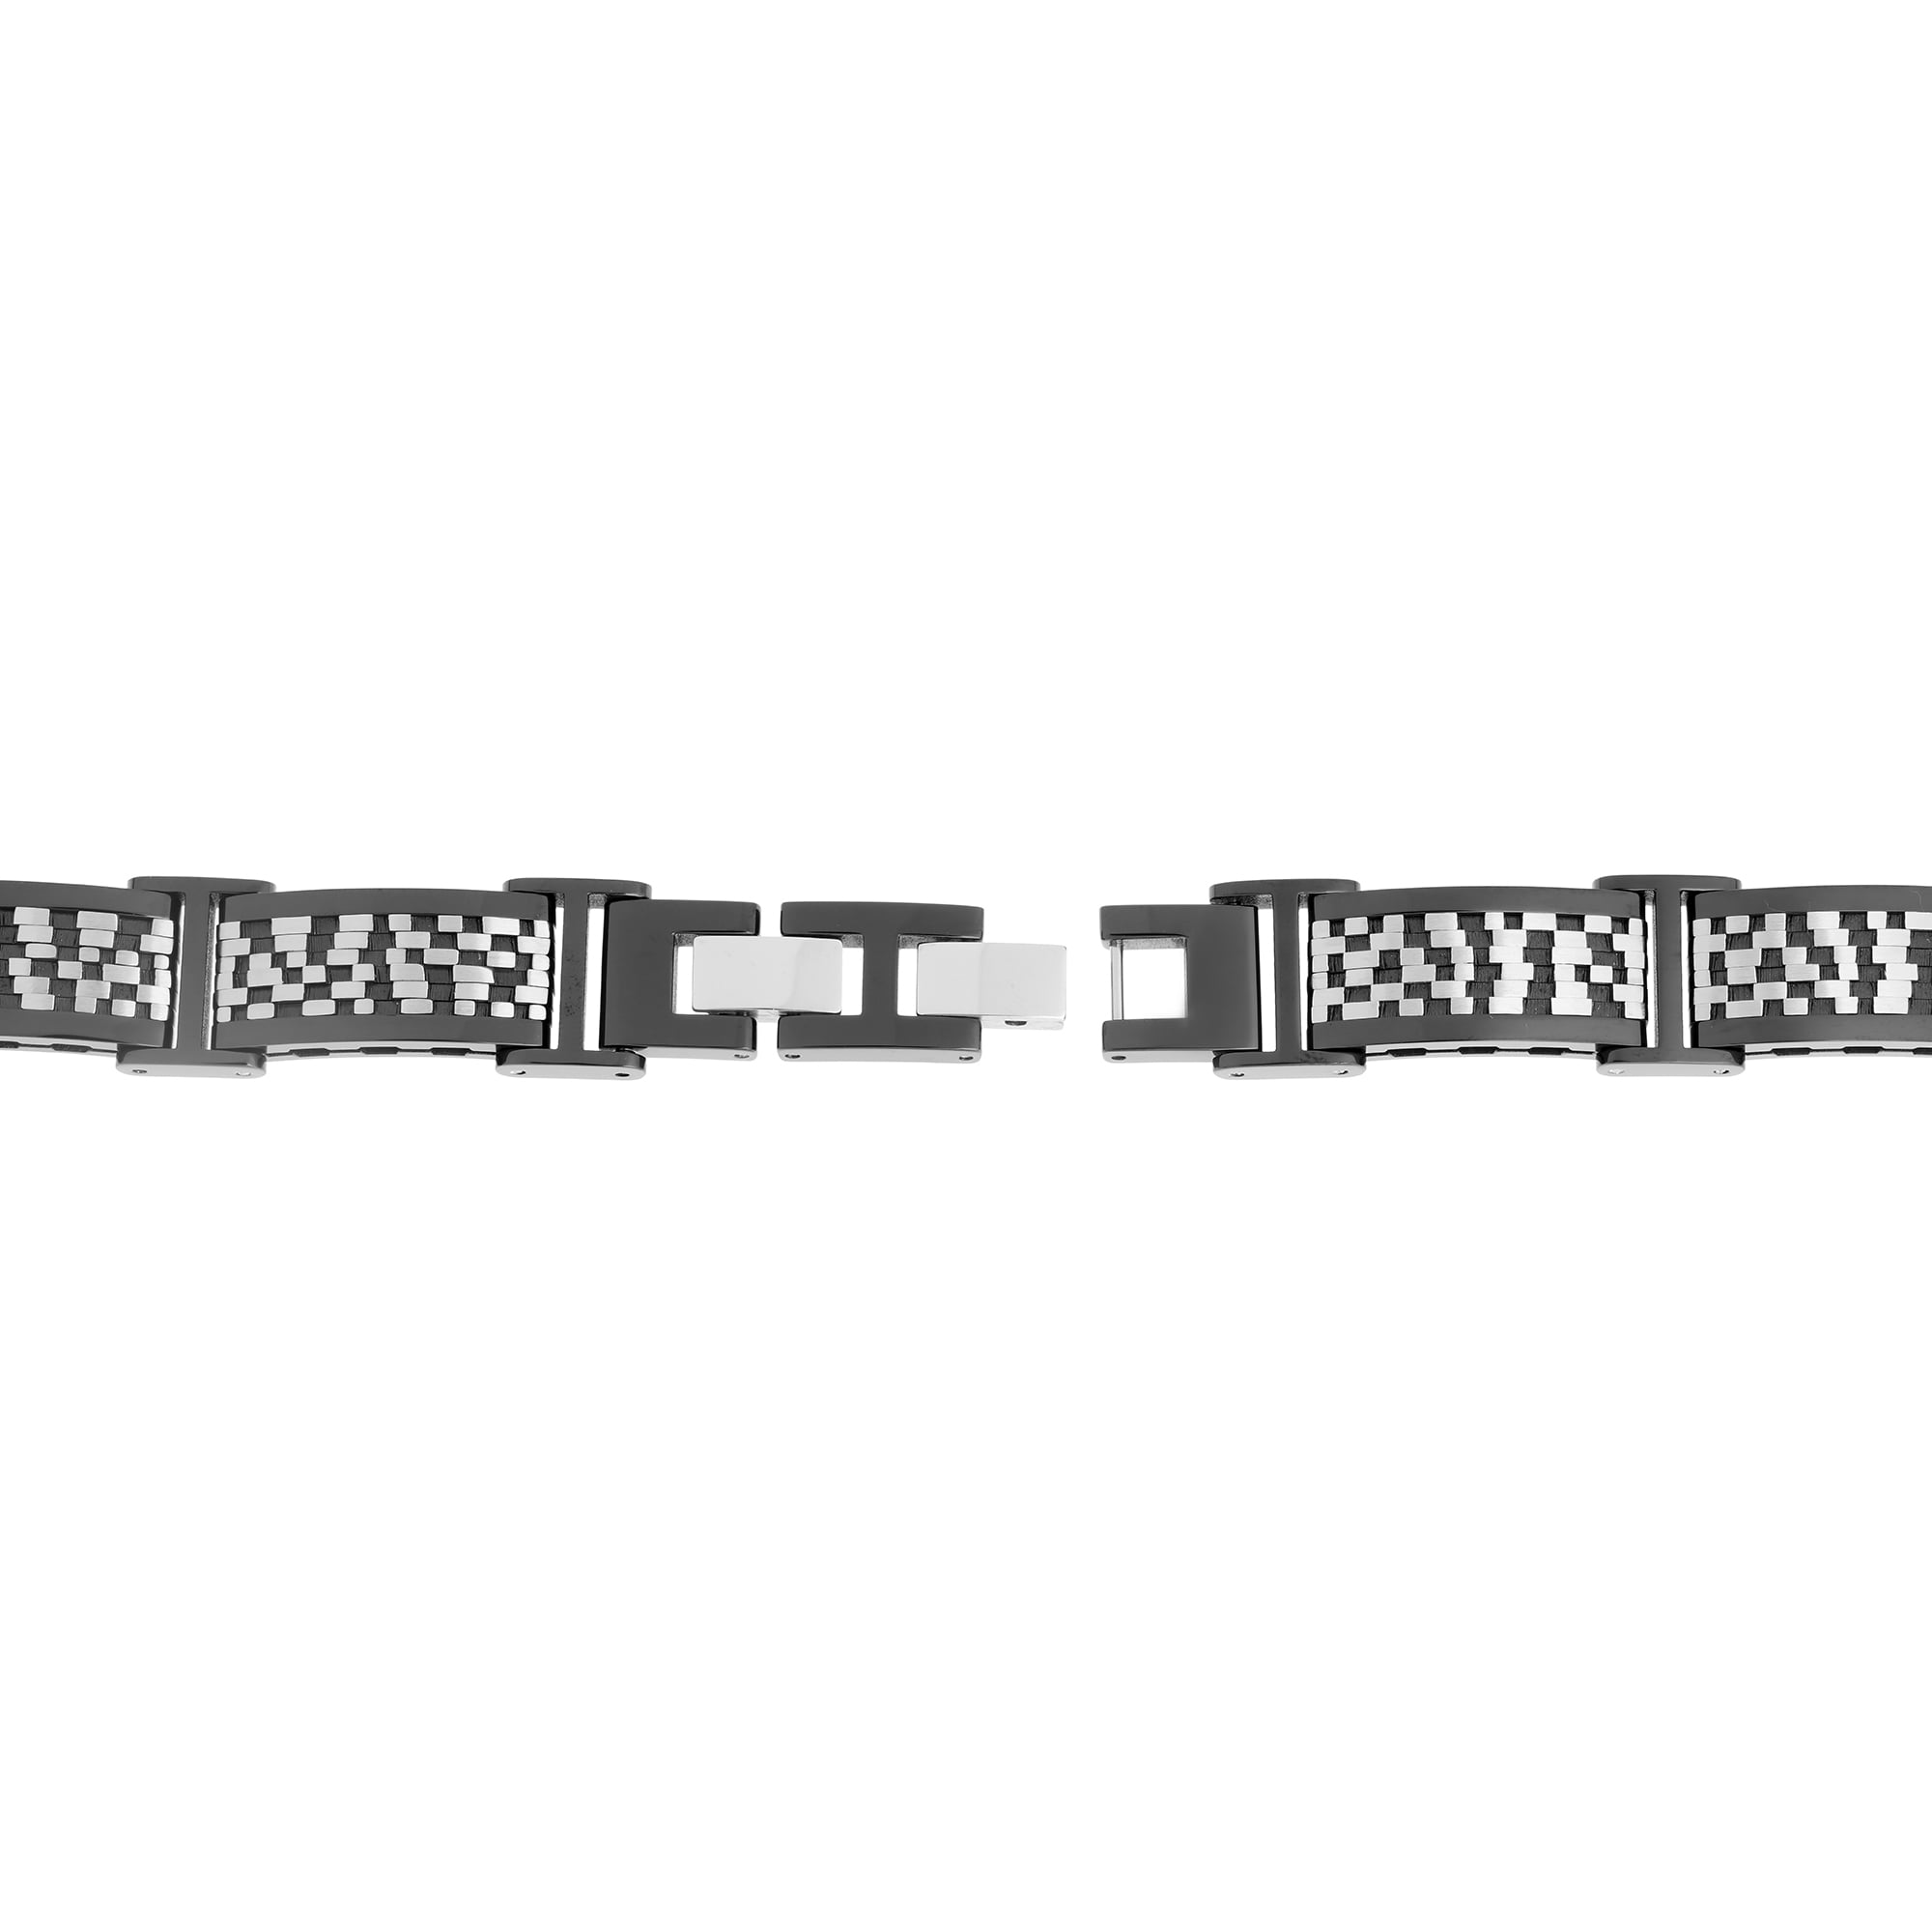 Metro Jewelry Stainless Steel Textured Bracelet Black Ip Plating Lock Extender